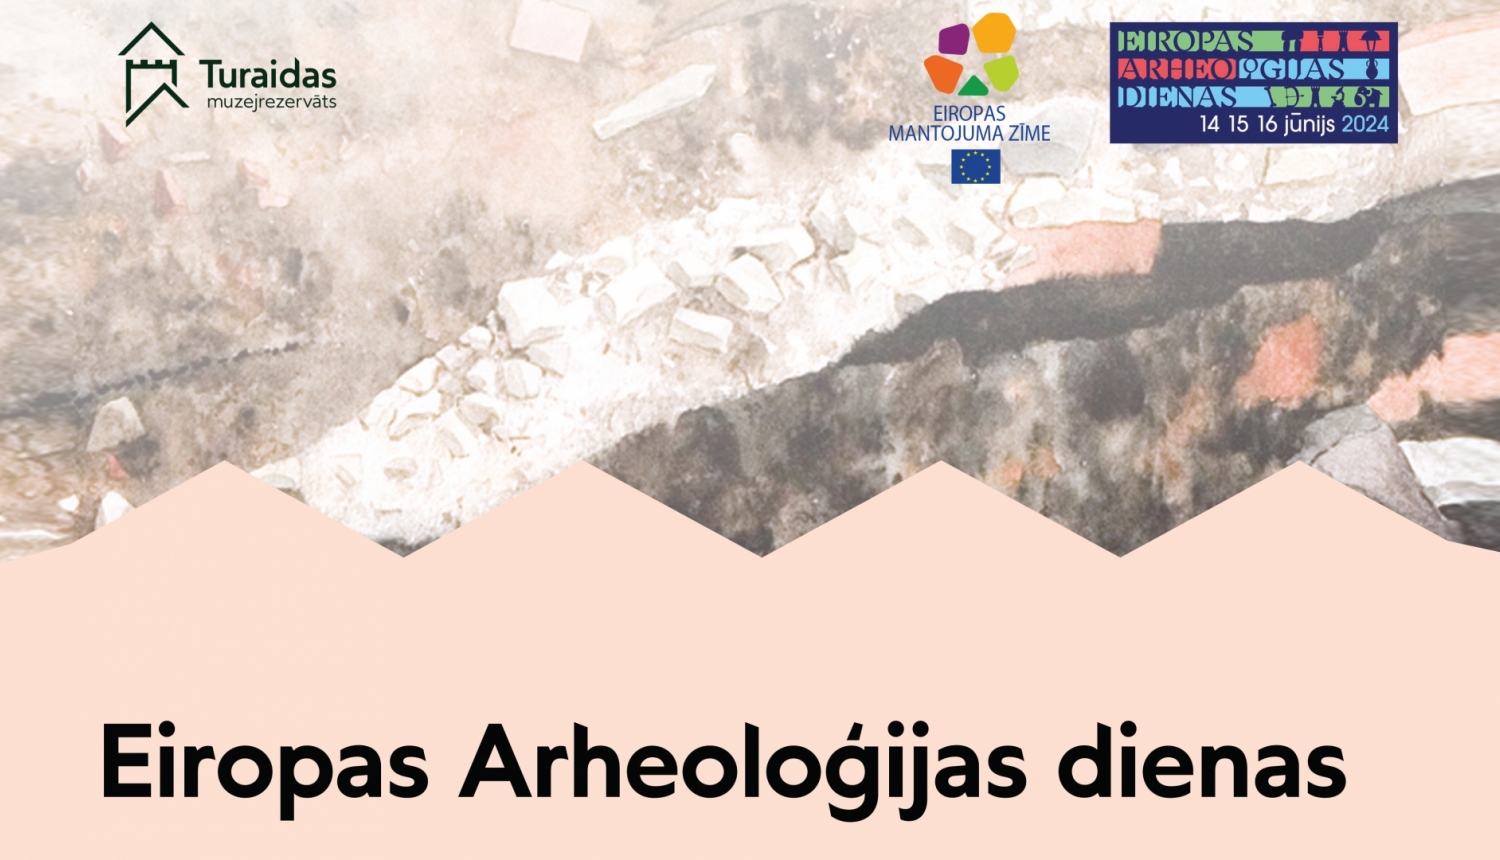 Eiropas Arheoloģijas dienas Turaidas muzejrezervātā - afišas fragments